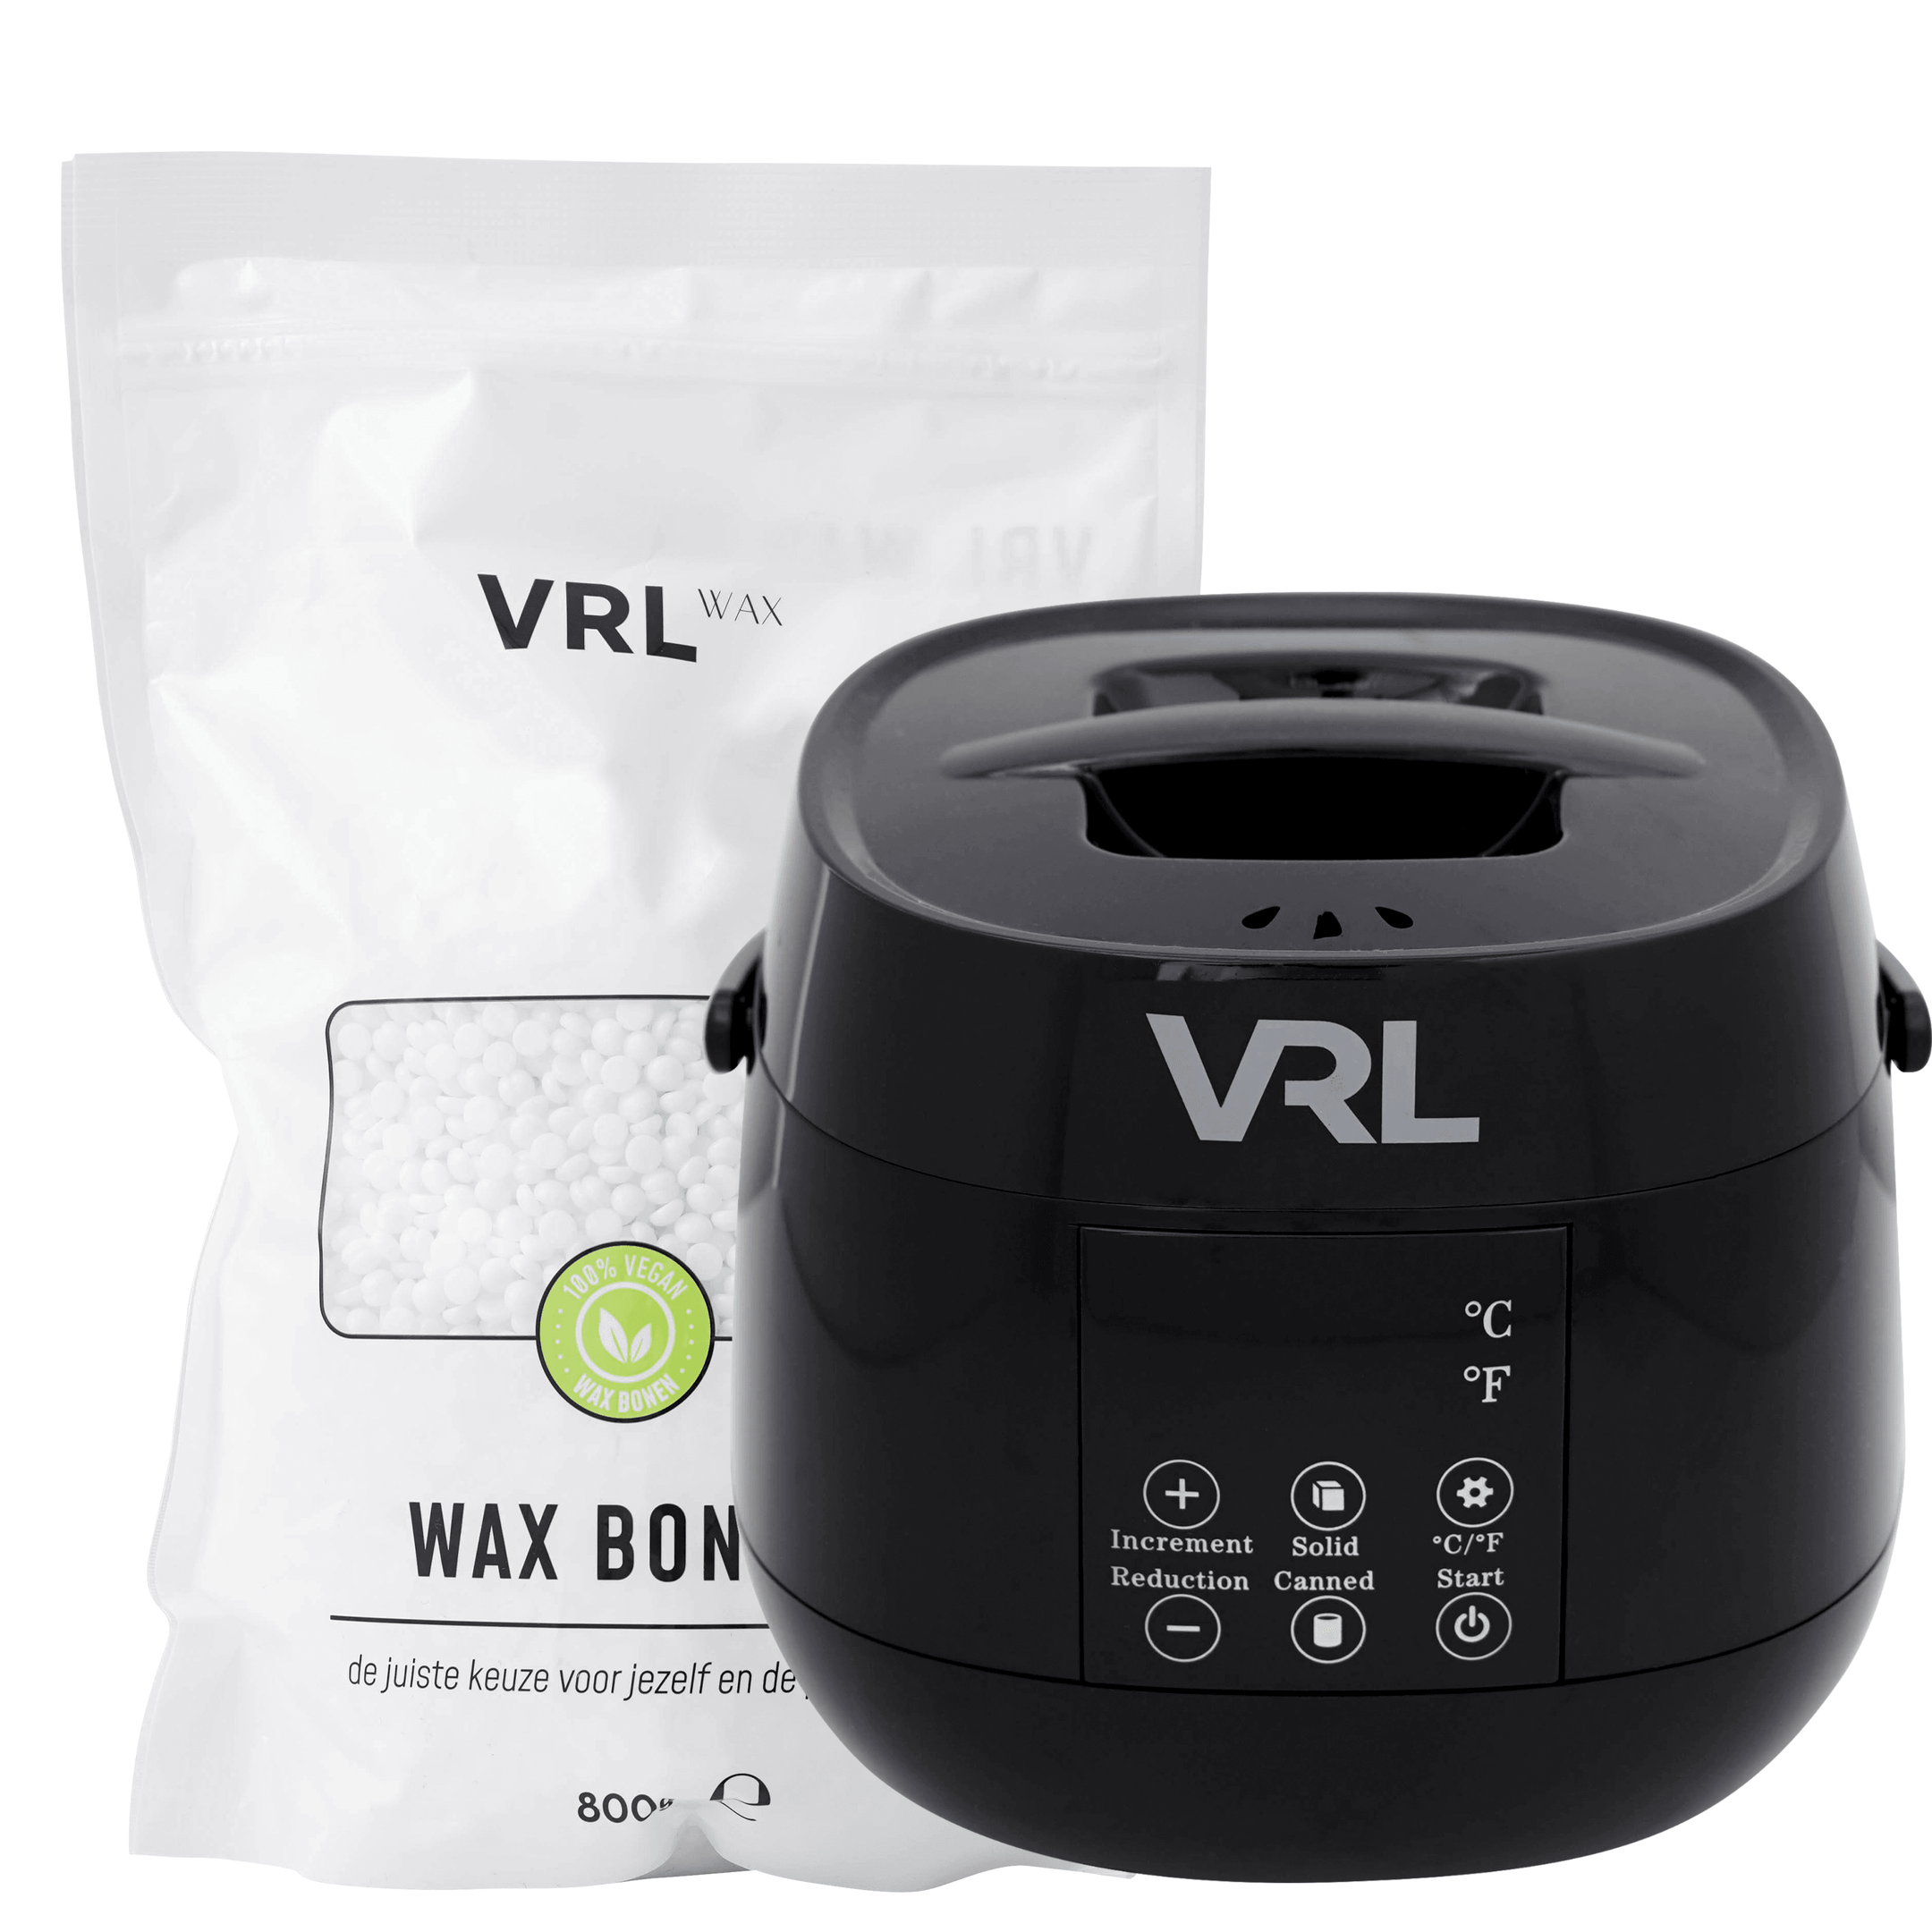 VRL Smart Wax Apparaat - Compleet met Kokos Wax Bonen